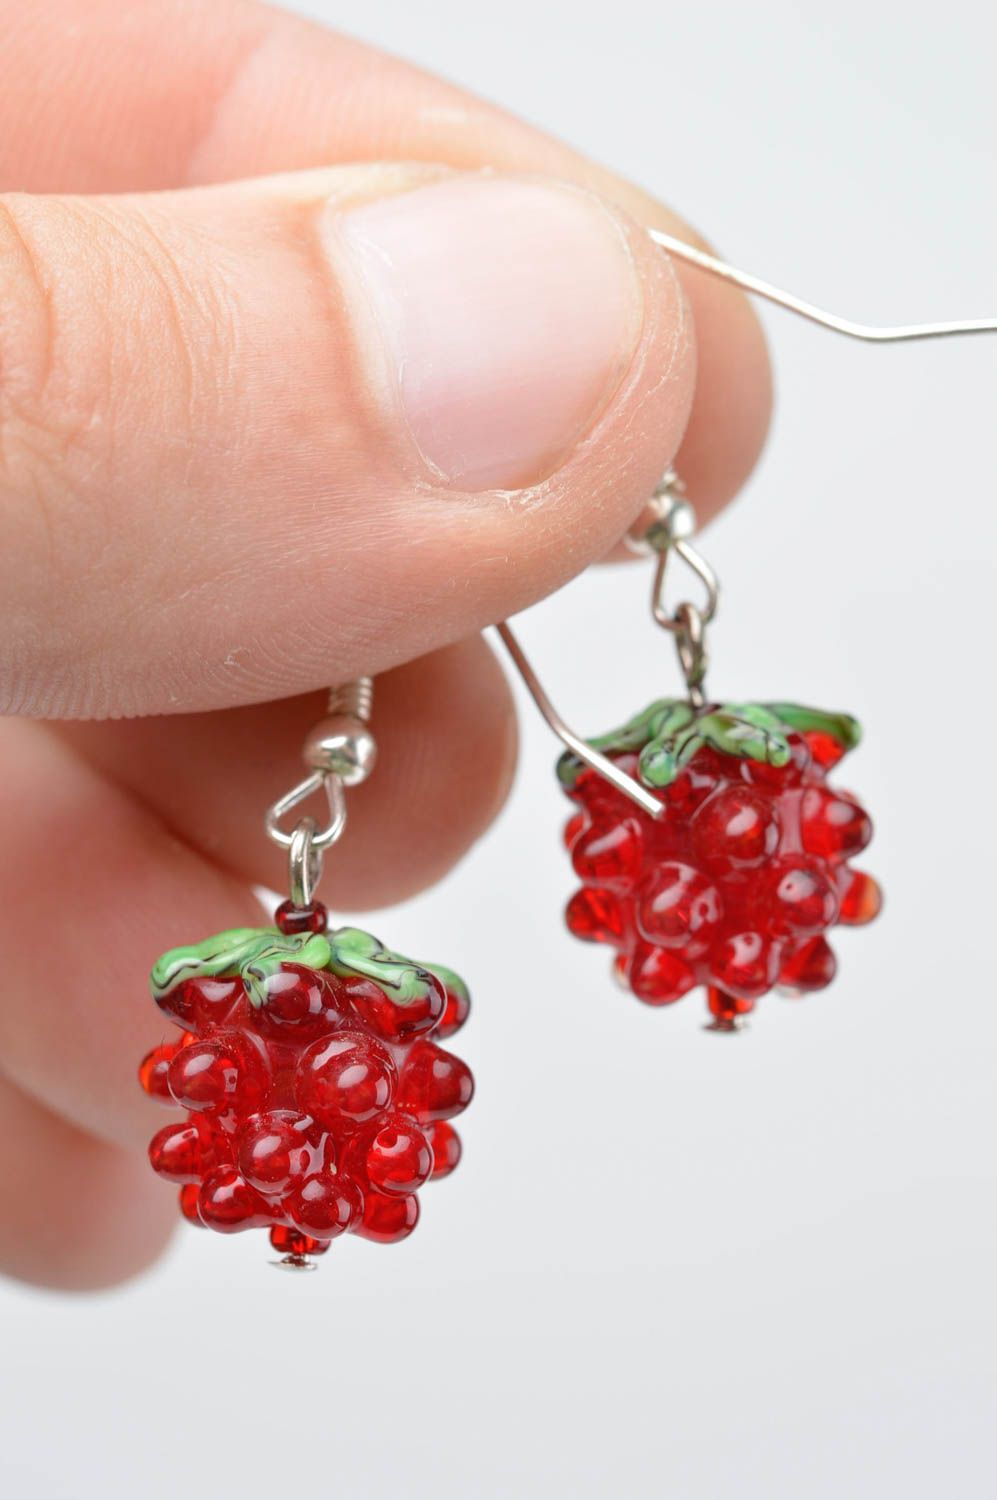 Handmade glass earrings designer accessories for women stylish earrings photo 5